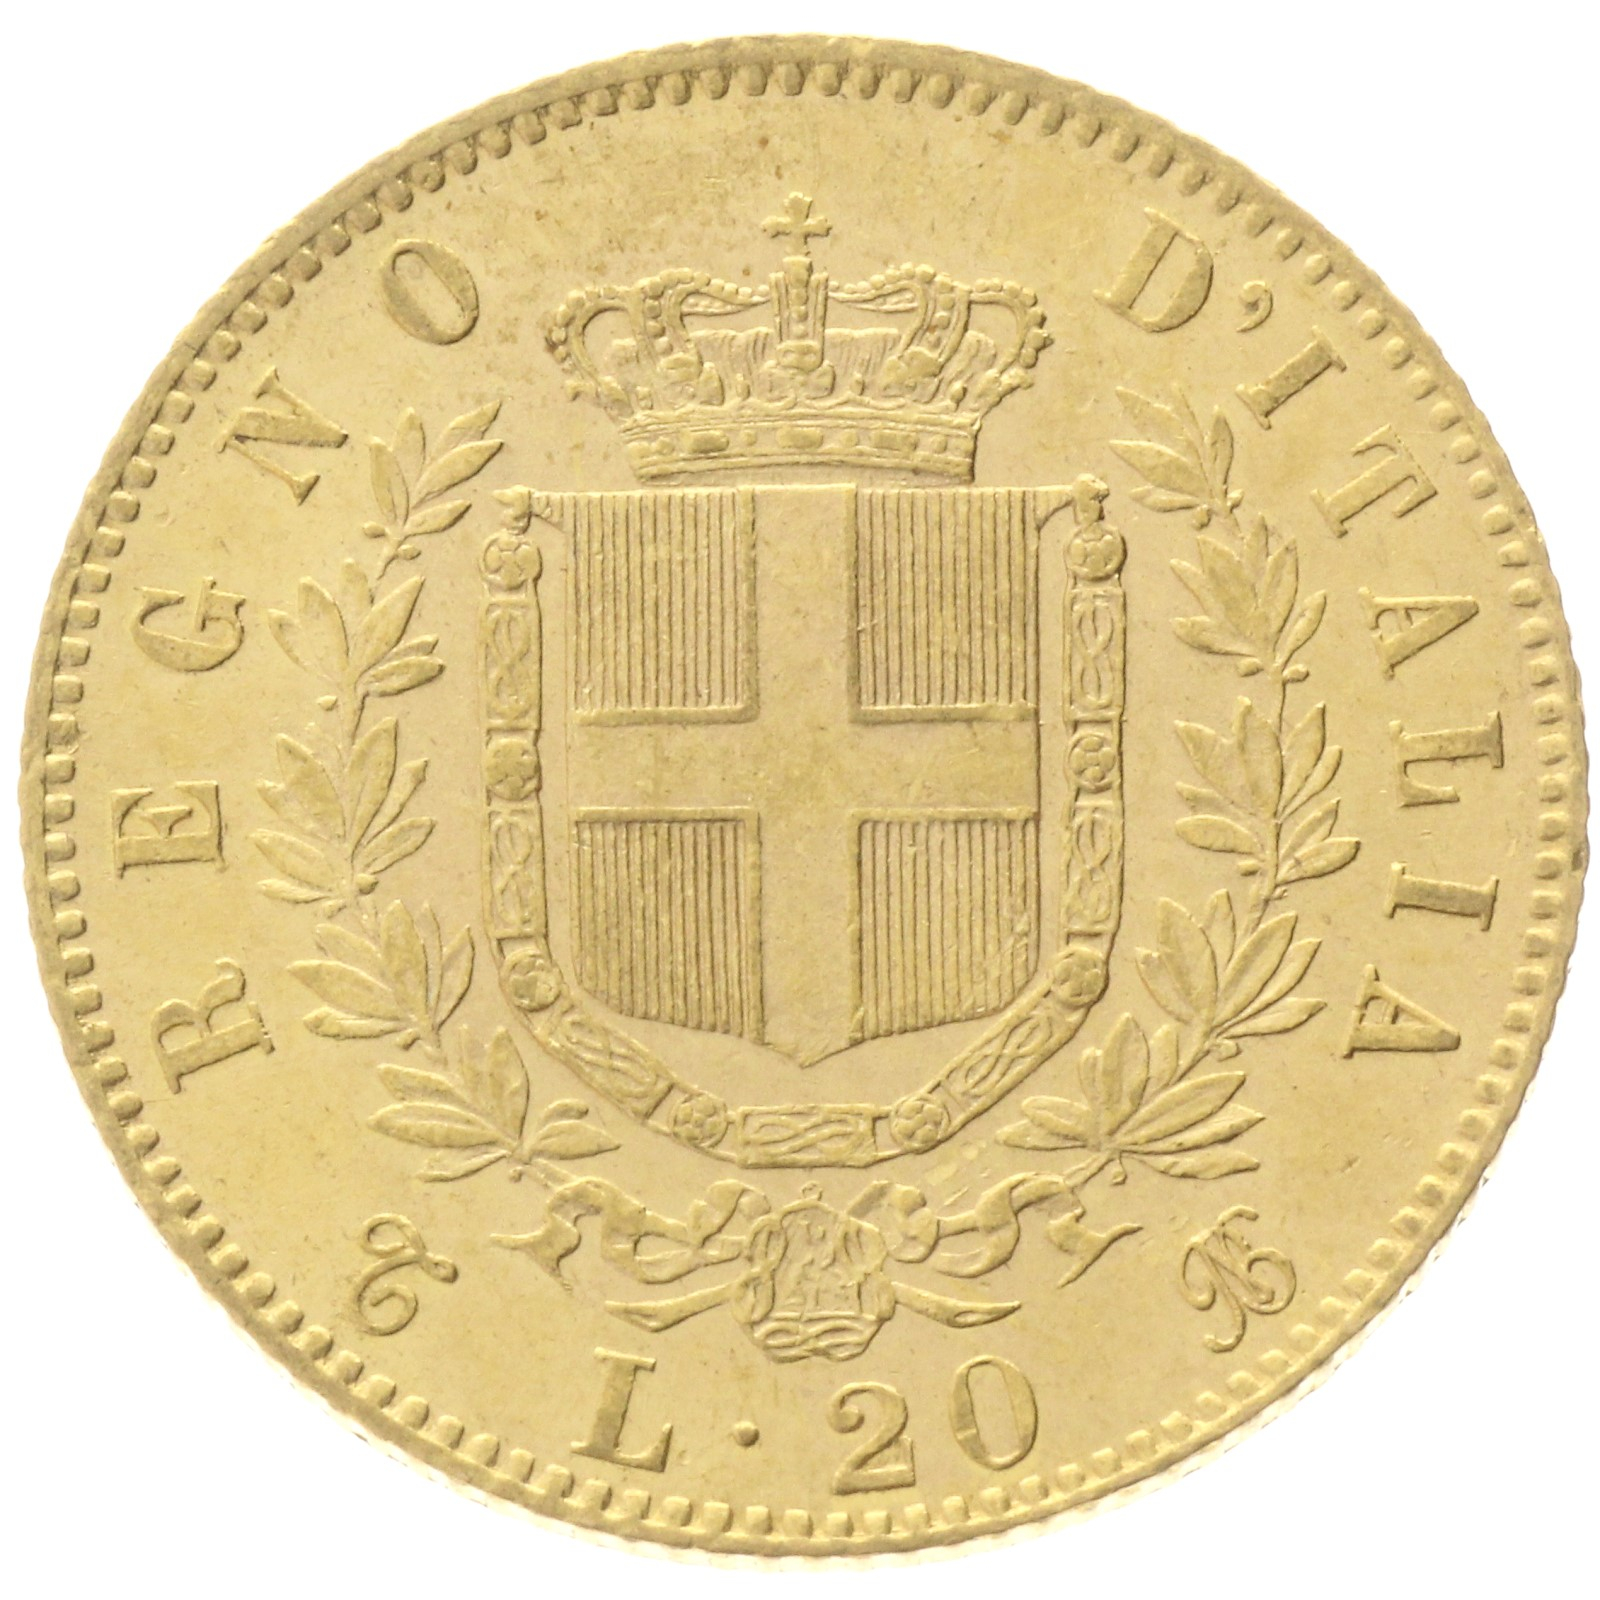 Italy - 20 Lire - 1863 - T - Vittorio Emanuele II 